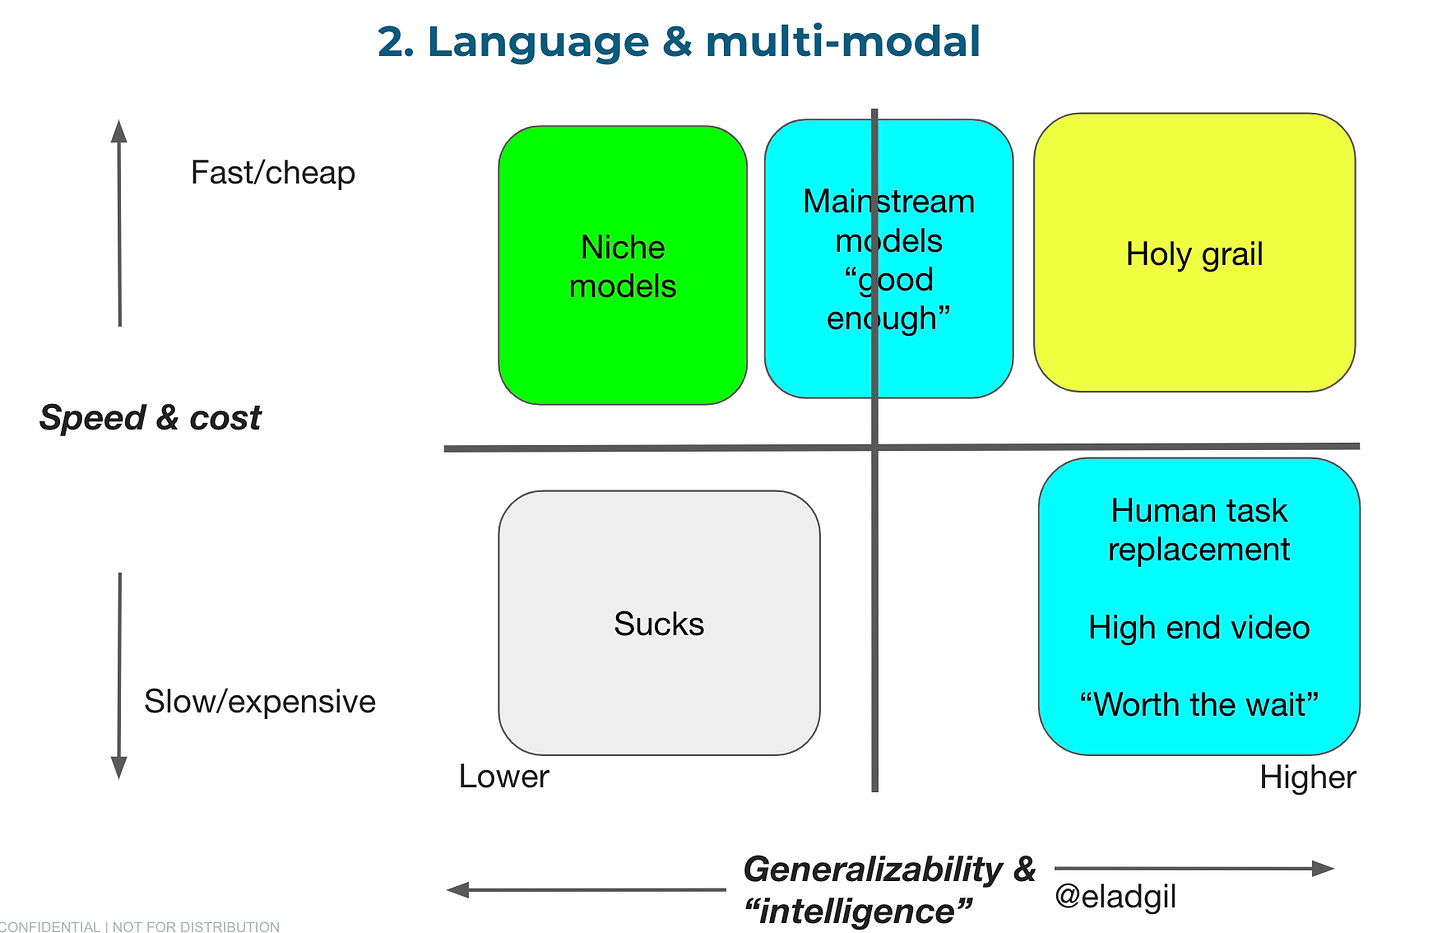 LLM 모델의 속도&가격 vs. 성능 매트릭스<br>느리지만 인간만큼 뛰어난 성능의 모델(오른쪽 아래), 괜찮은 성능에 빠르고 싼 모델(가운데 위 메인스트림 모델<br>